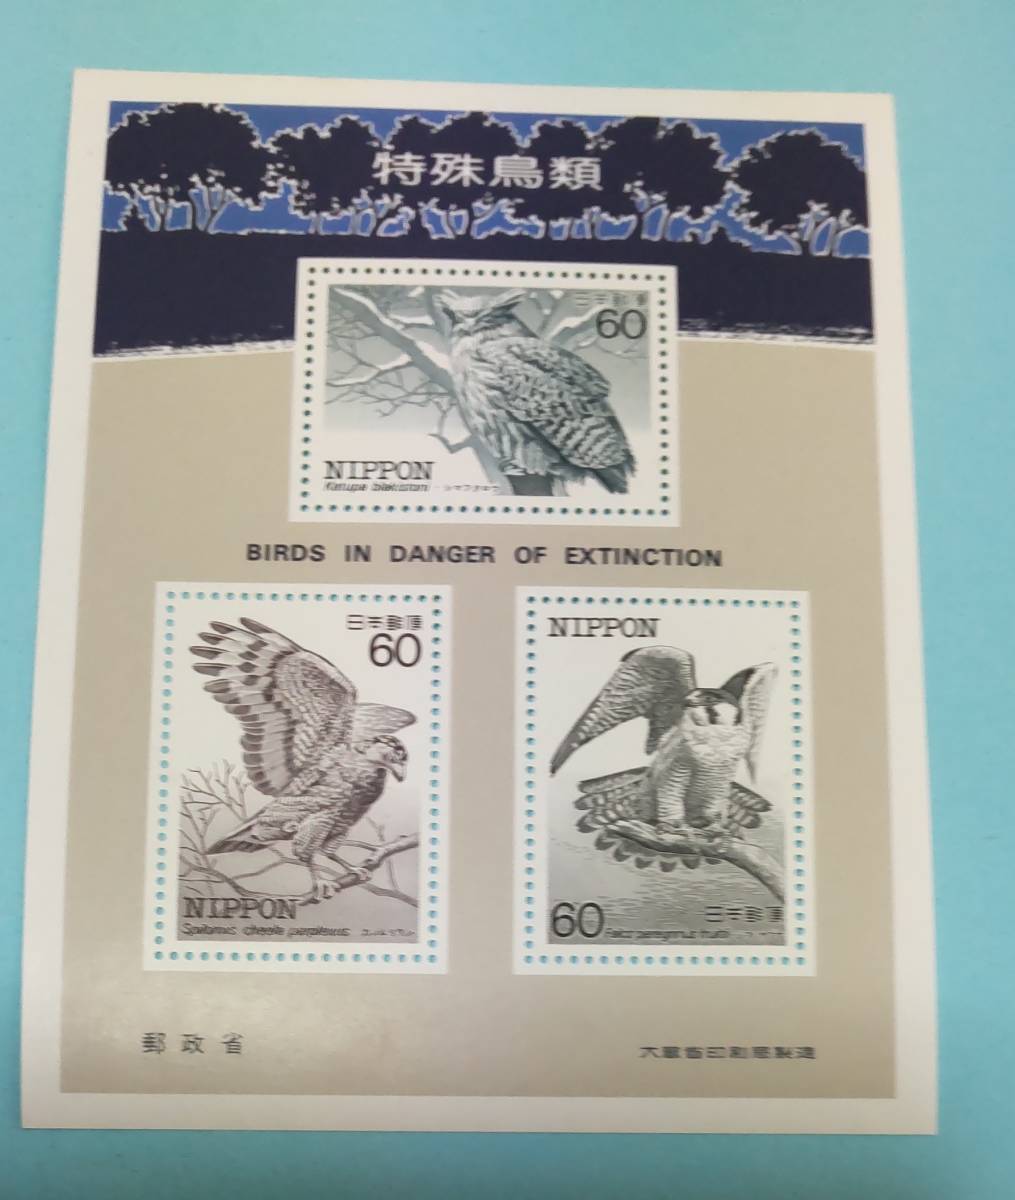 近代美術・特殊鳥類の時代 切手がアートだった頃 1979―1985